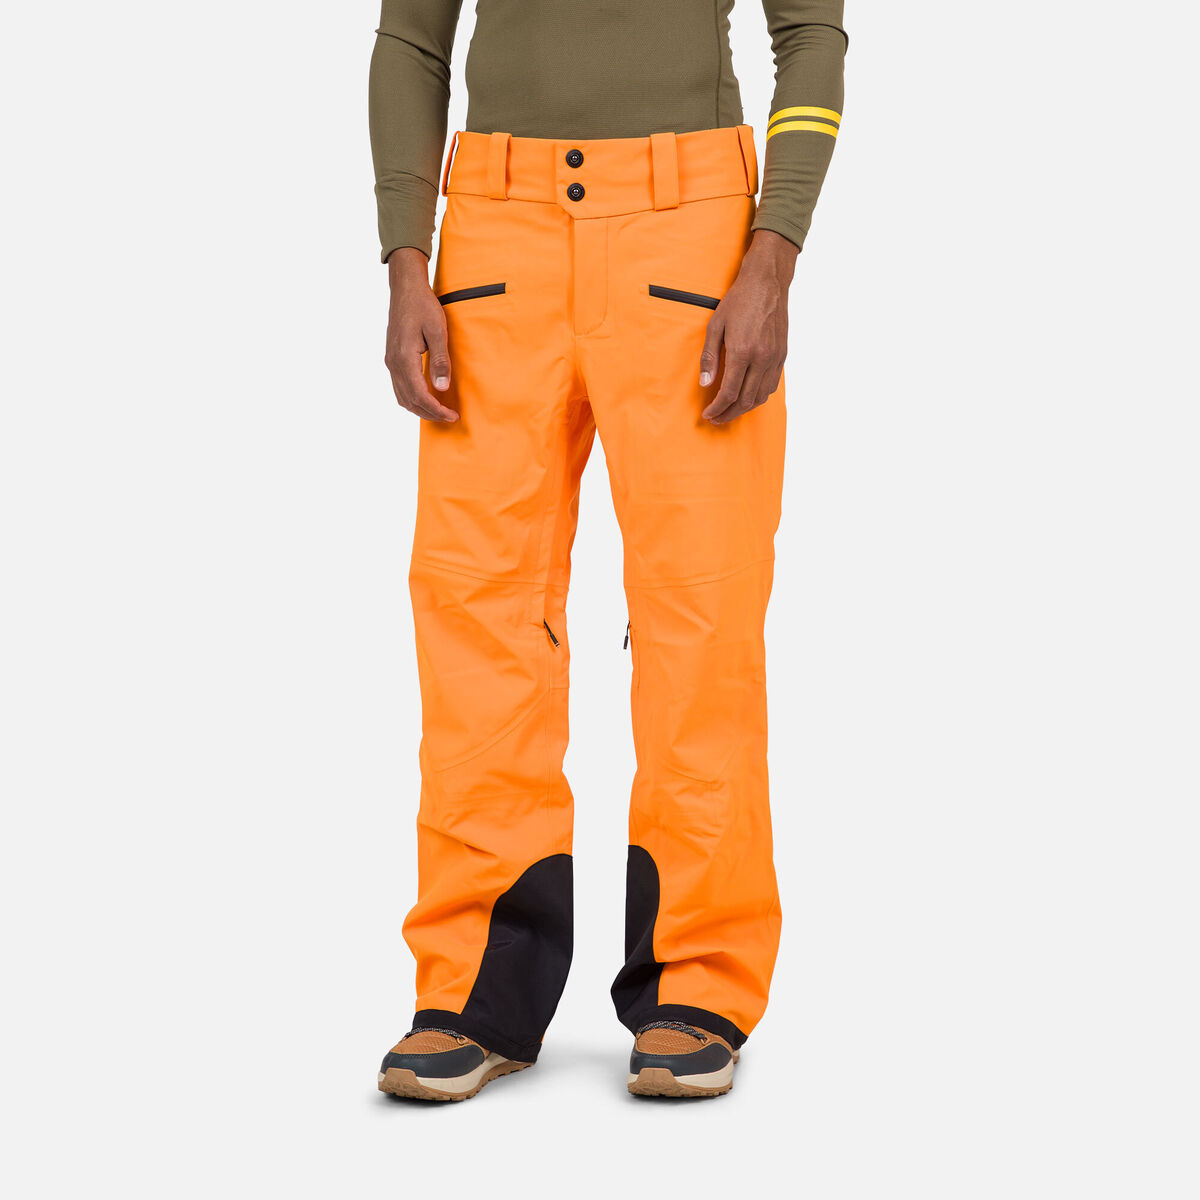 Rossignol Men's Evader Ski Pants Orange